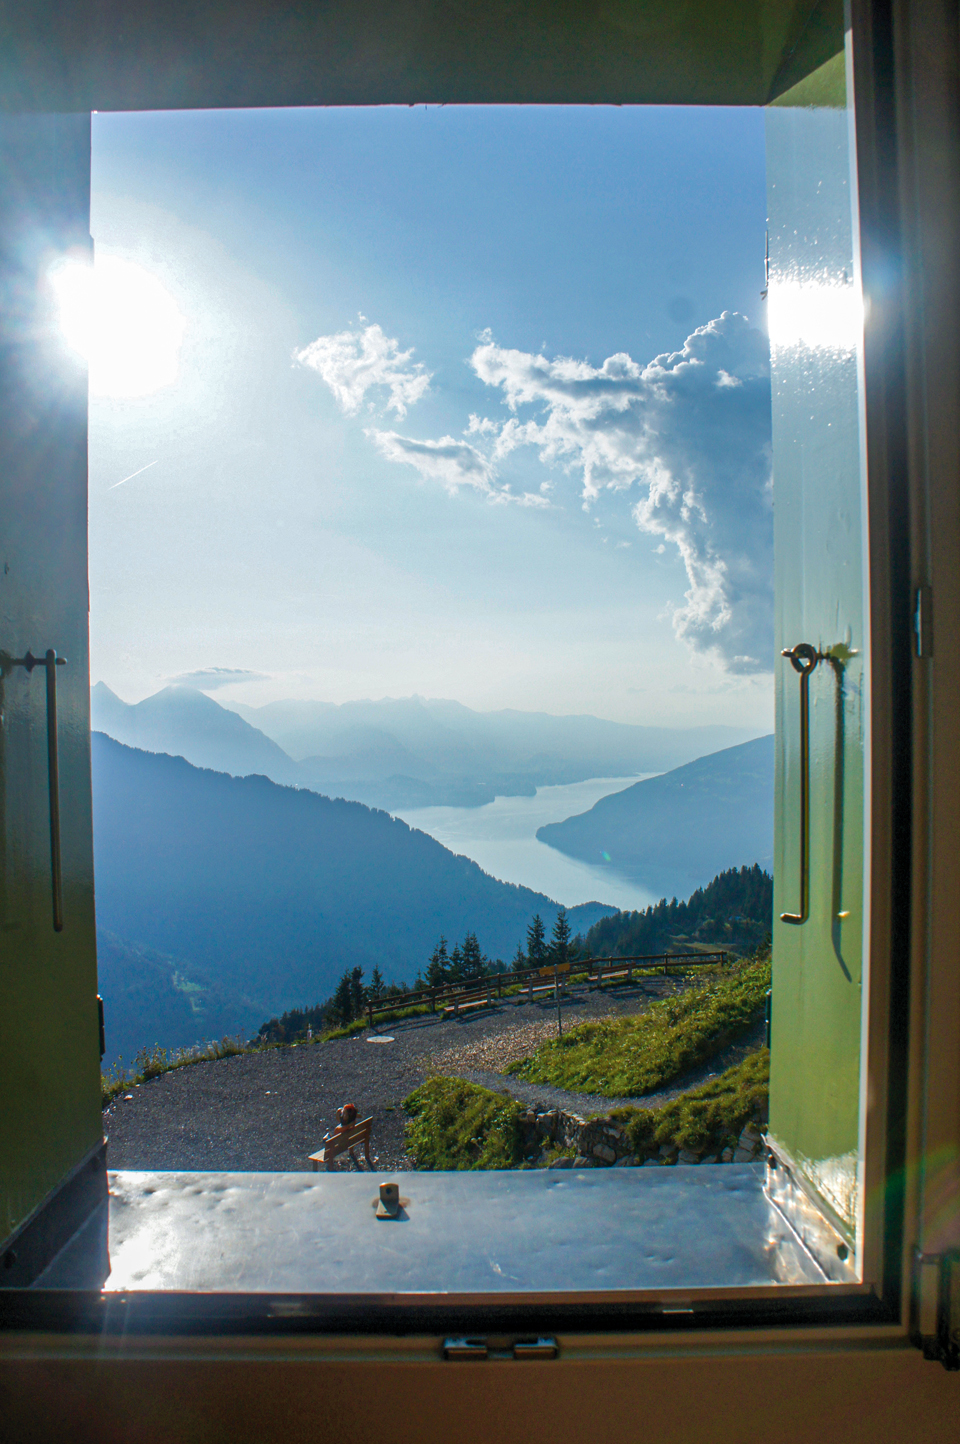 창문을 열면 스위스의 깨끗한 풍경이 펼쳐진다.